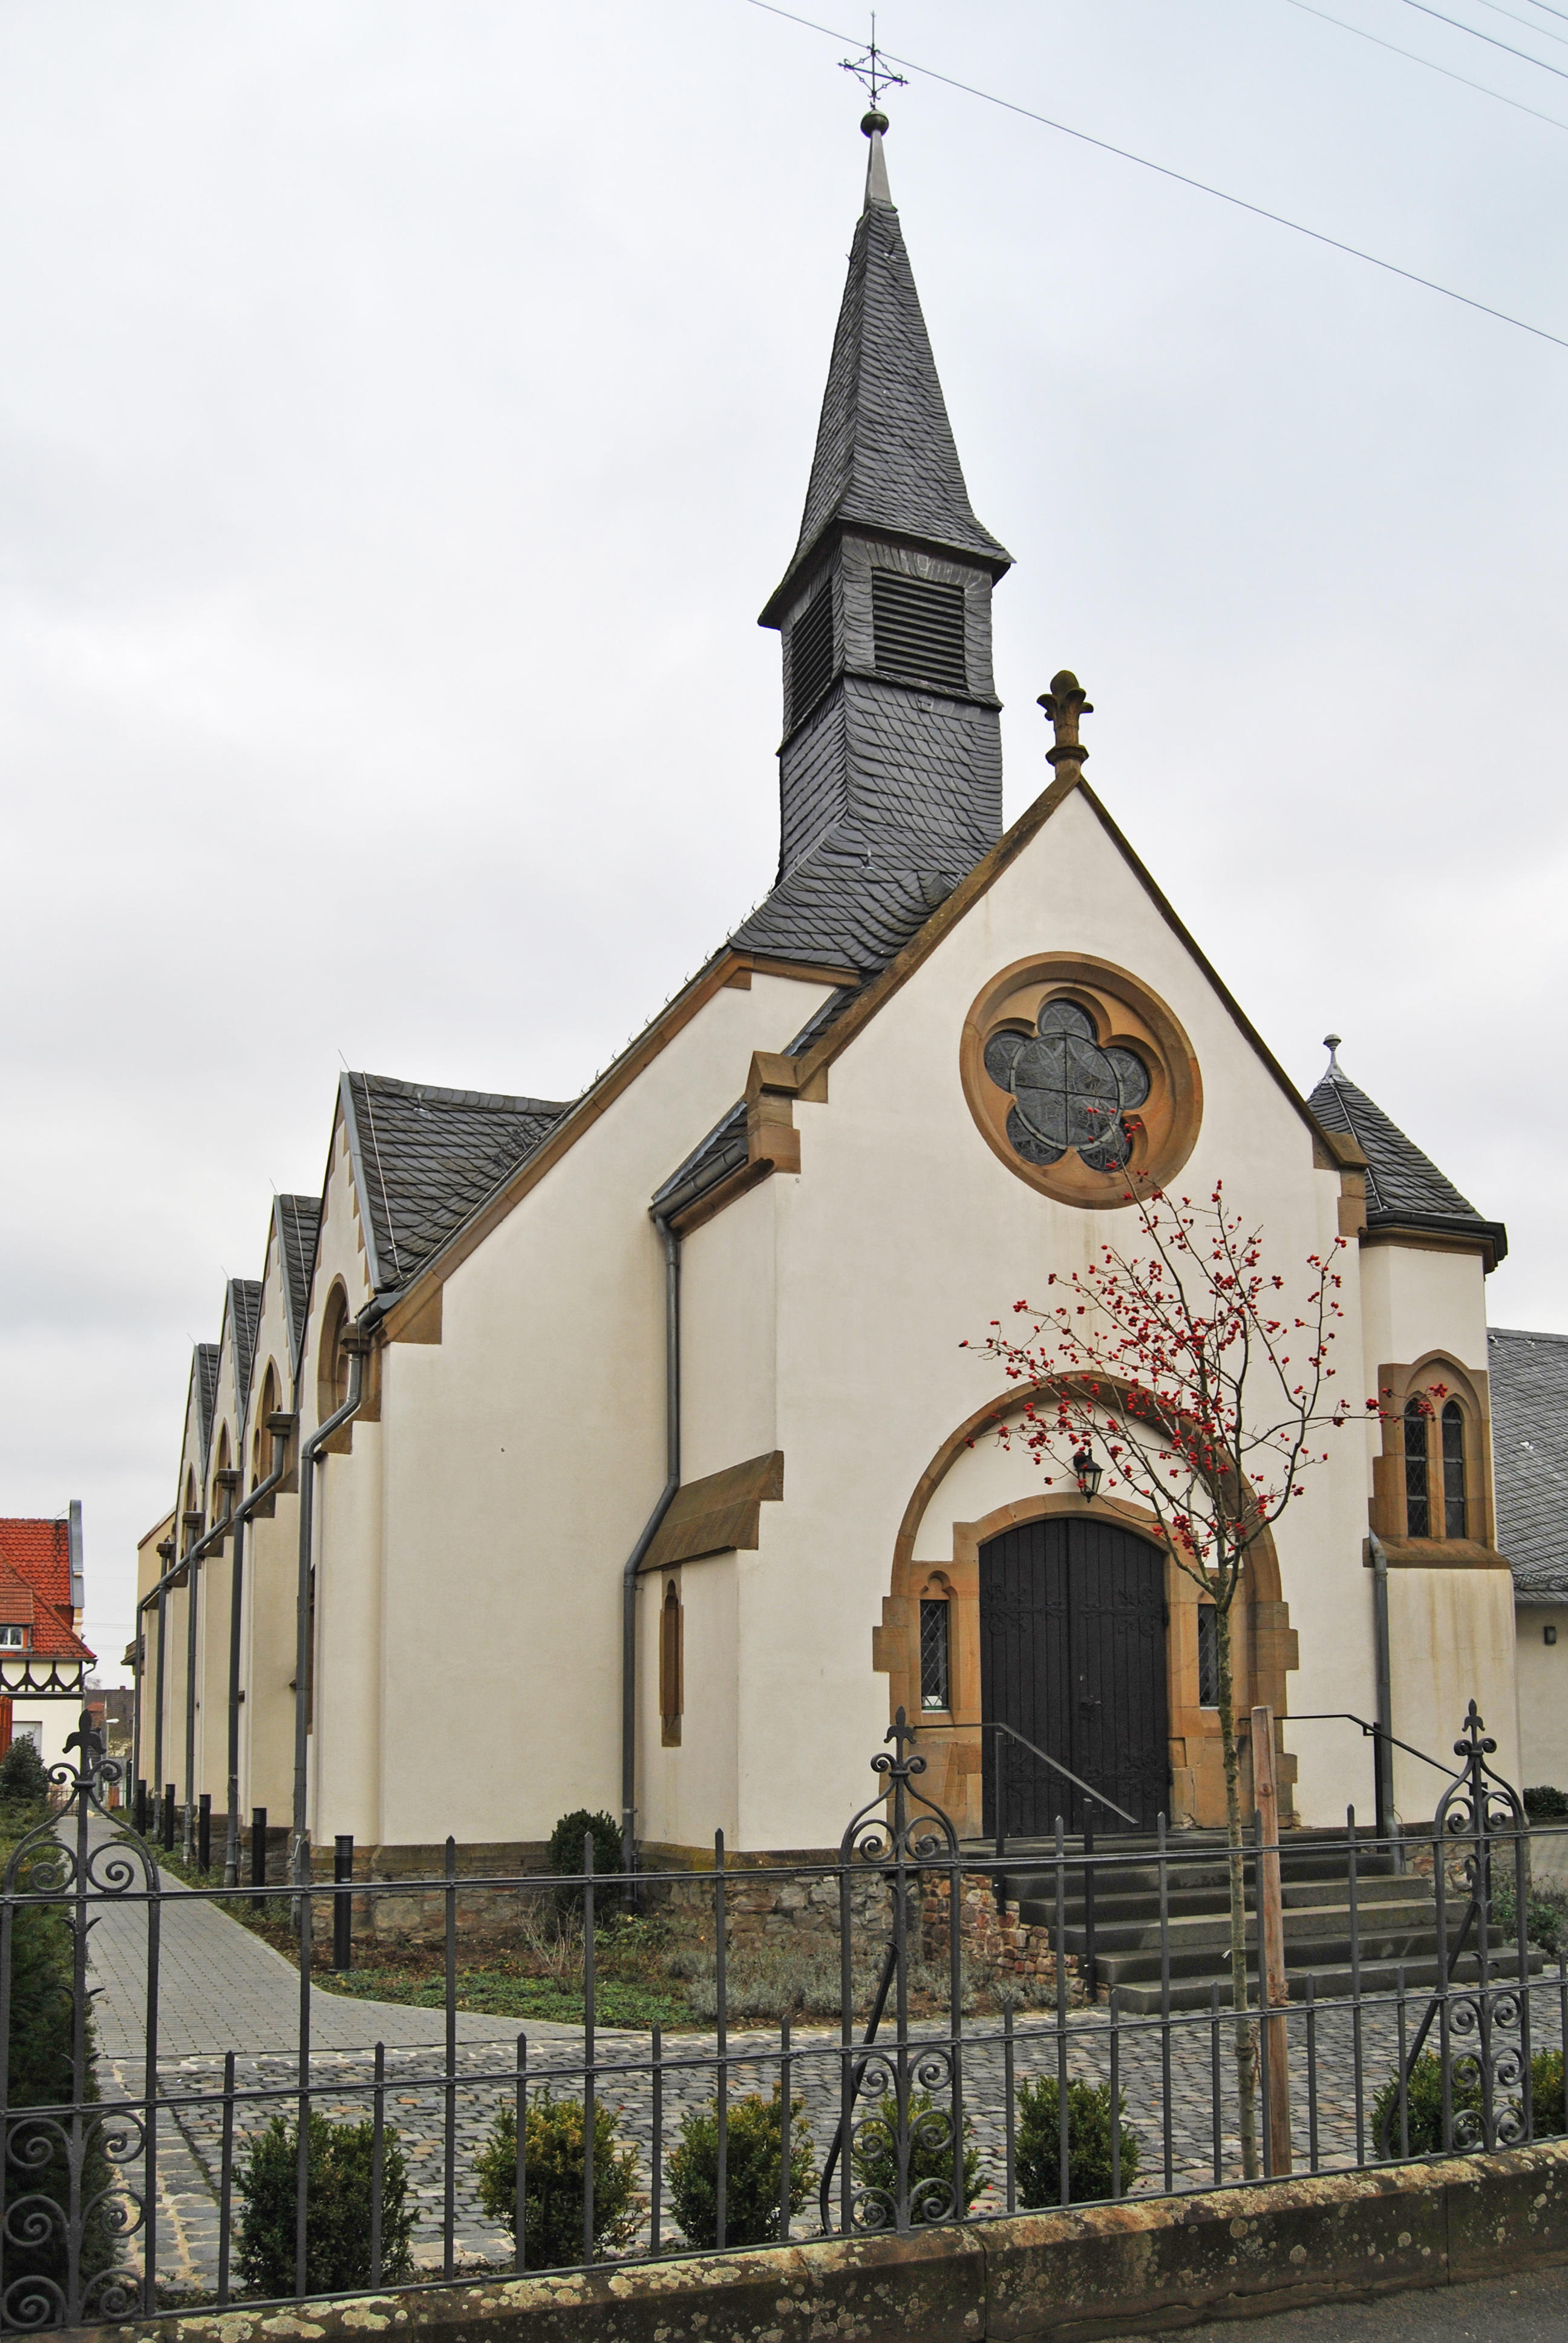 Am 1. August 1902 wurden die Christuskapelle und das jetzt als Küsterhaus genutzte Nebengebäude in der Taunussstraße nach siebenmonatiger Bauzeit eingeweiht. Der ursprüngliche Name Christuskapelle wurde nach mehr als 100 Jahren in Christuskirche umgewande